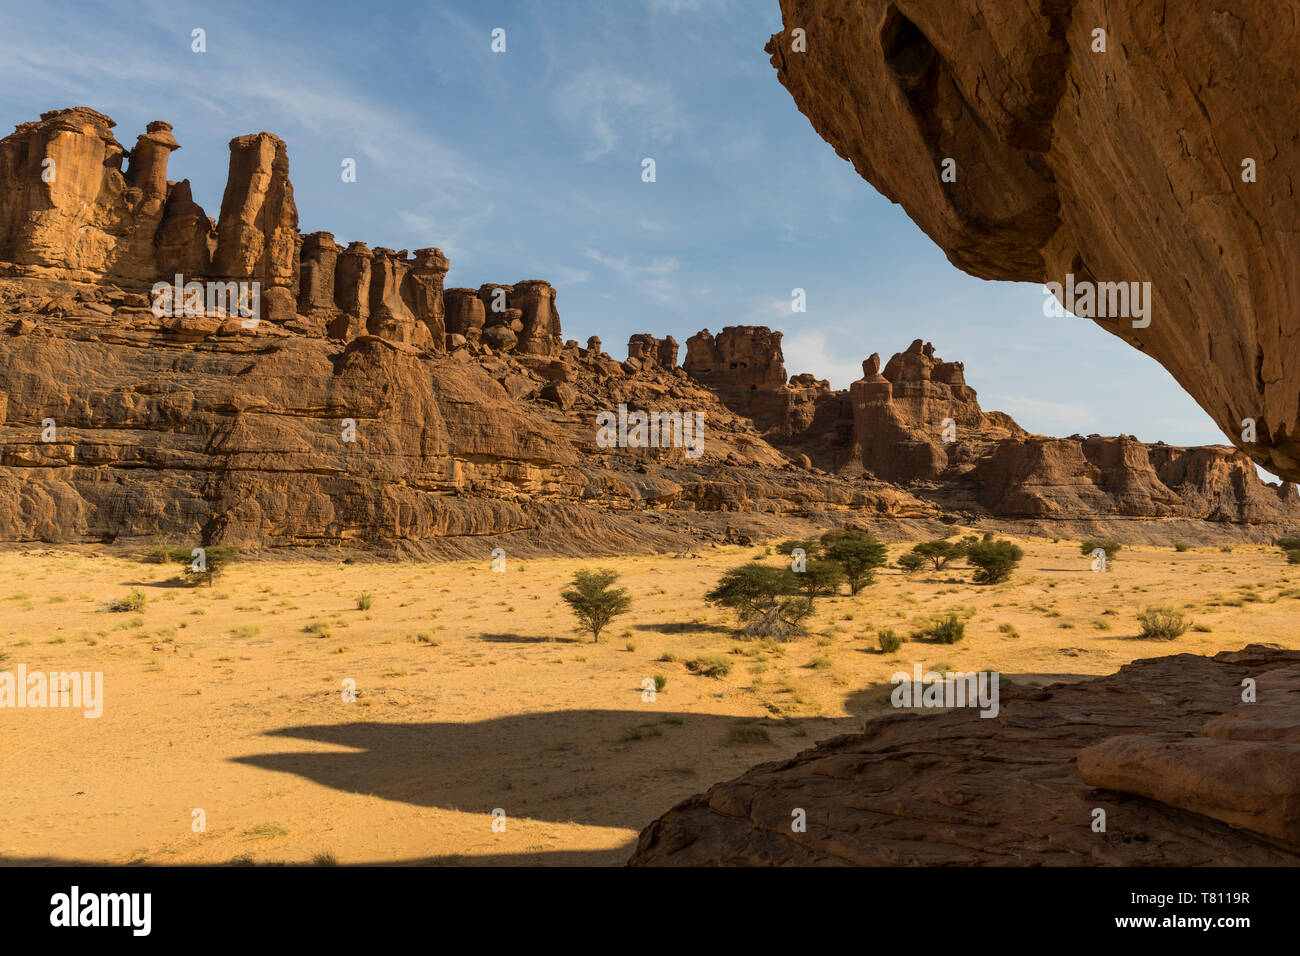 De belles formations rocheuses, l'Ennedi Plateau, Site du patrimoine mondial de l'Ennedi, Tchad, Afrique, région Banque D'Images